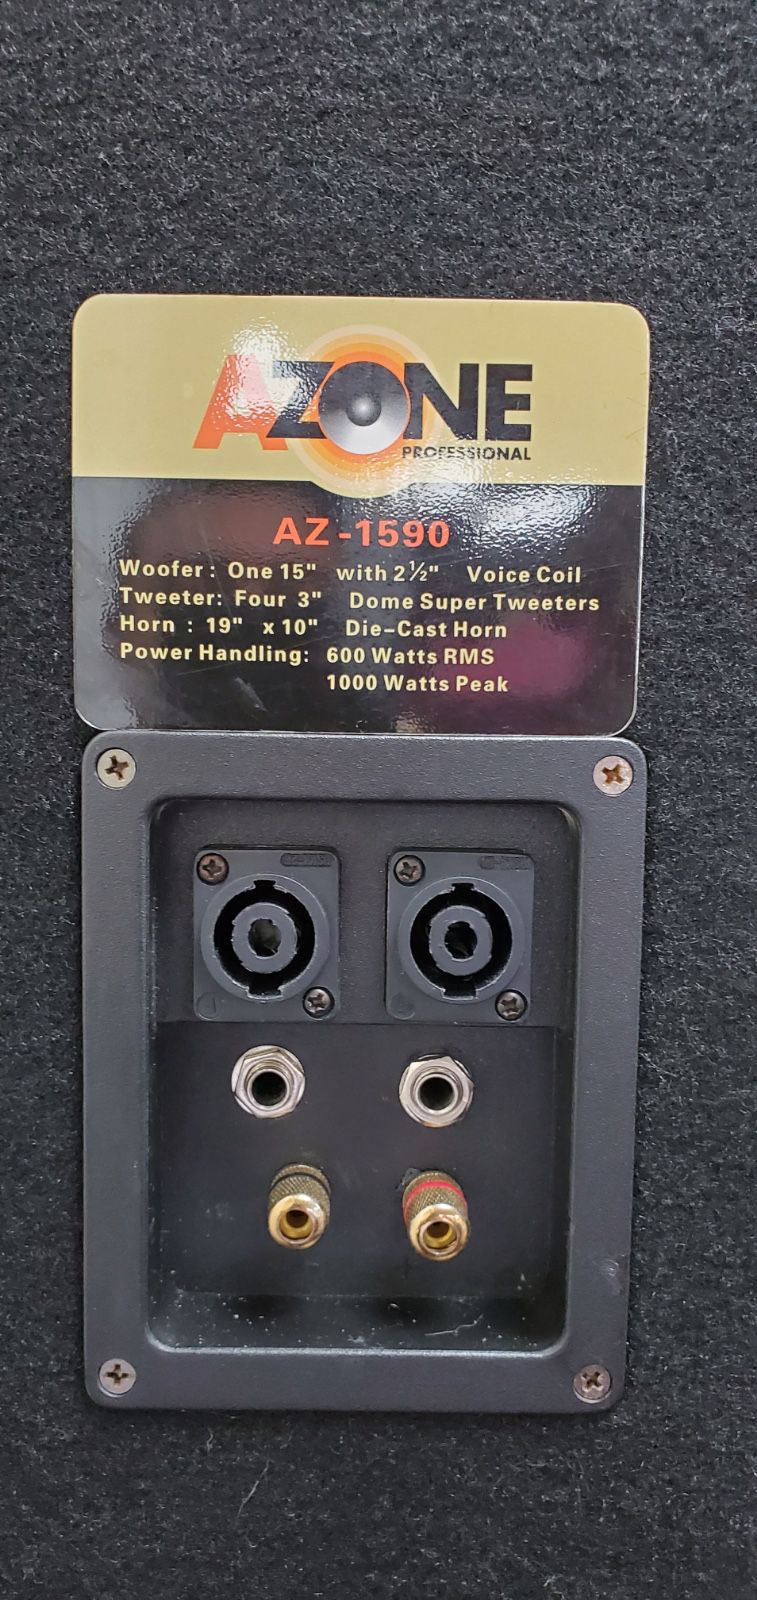 Azone speakers